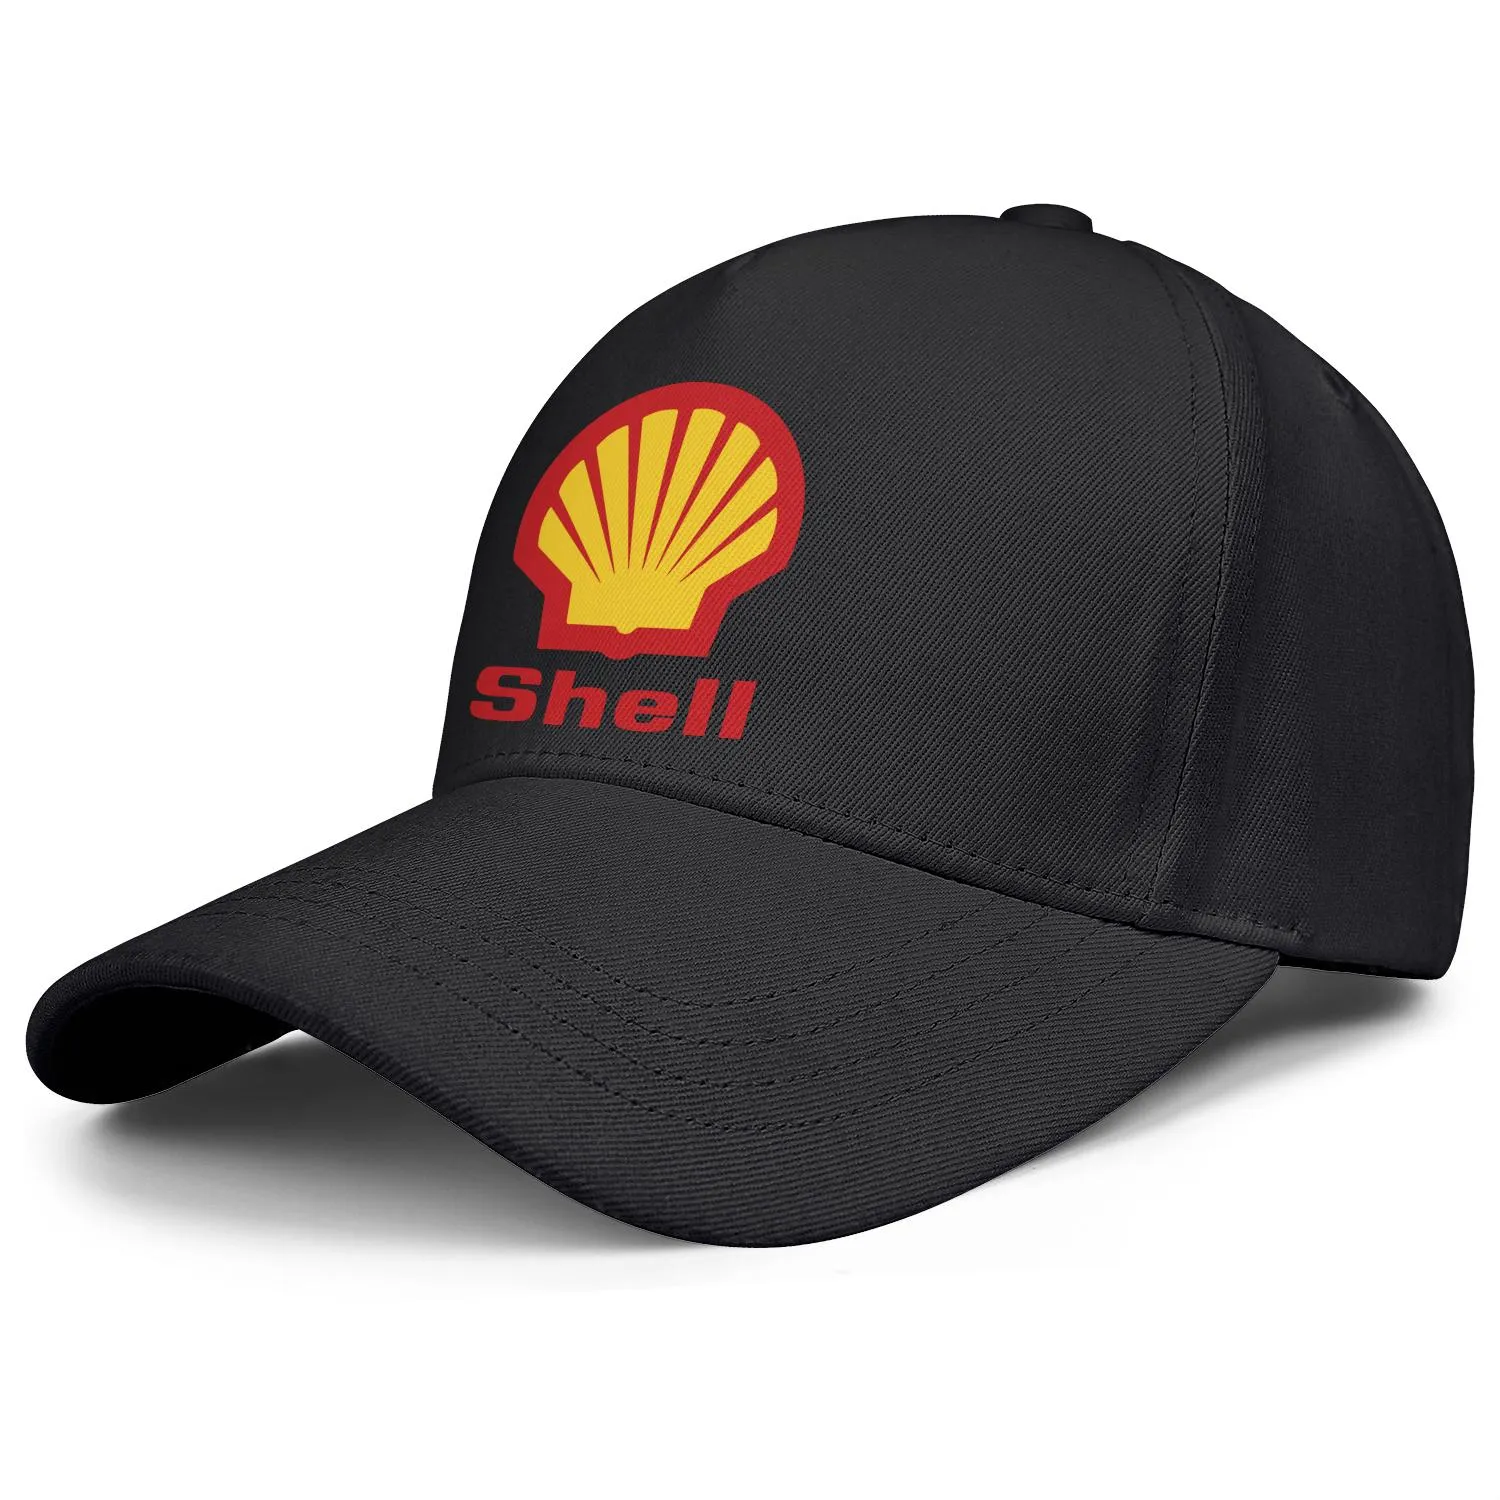 Shell benzine tankstation logo heren en dames verstelbare trucker cap voorzien van vintage schattige honkbalhoeden locator benzine symbo8137748